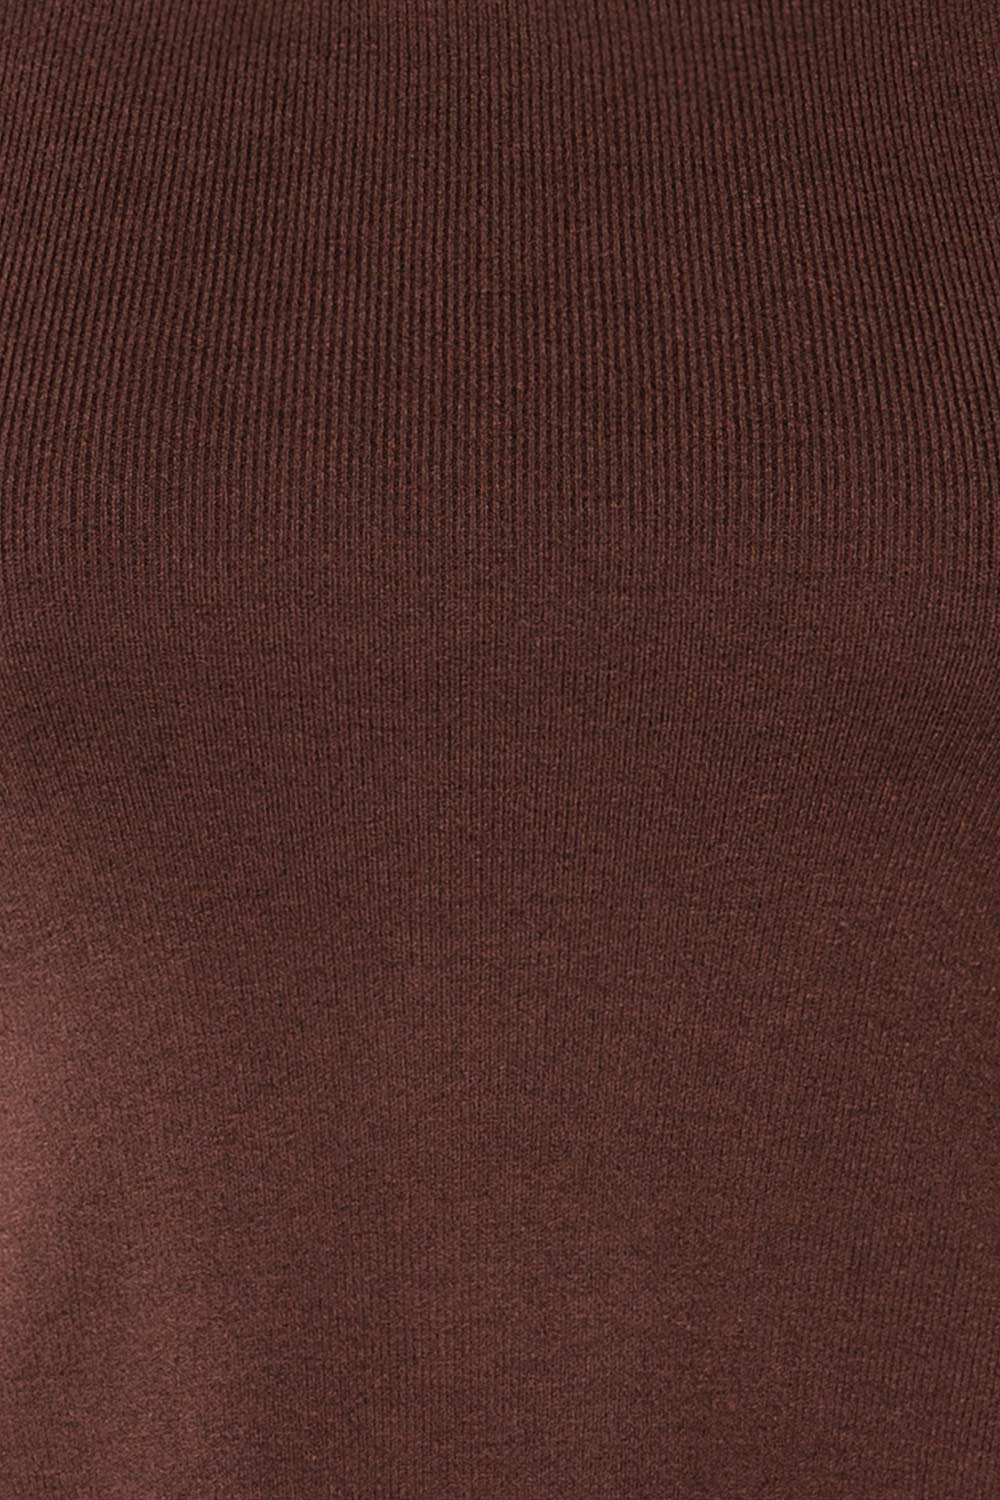 Jorden Brown Long Sleeve Crossed Back Top | La Petite Garçonne fabric 